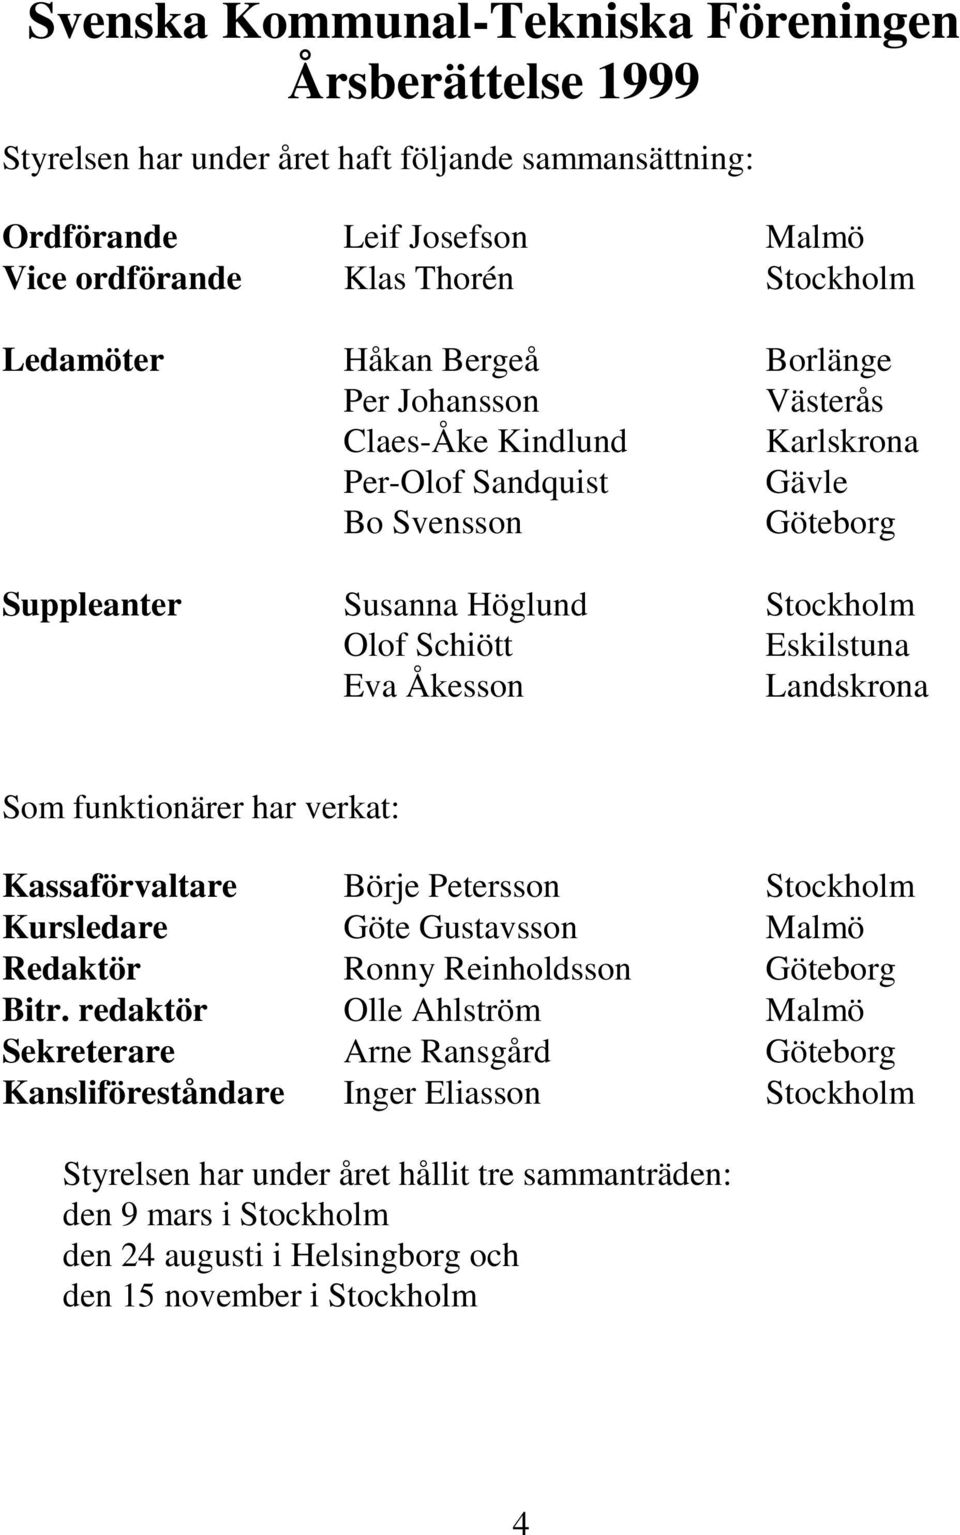 Landskrona Som funktionärer har verkat: Kassaförvaltare Börje Petersson Stockholm Kursledare Göte Gustavsson Malmö Redaktör Ronny Reinholdsson Göteborg Bitr.